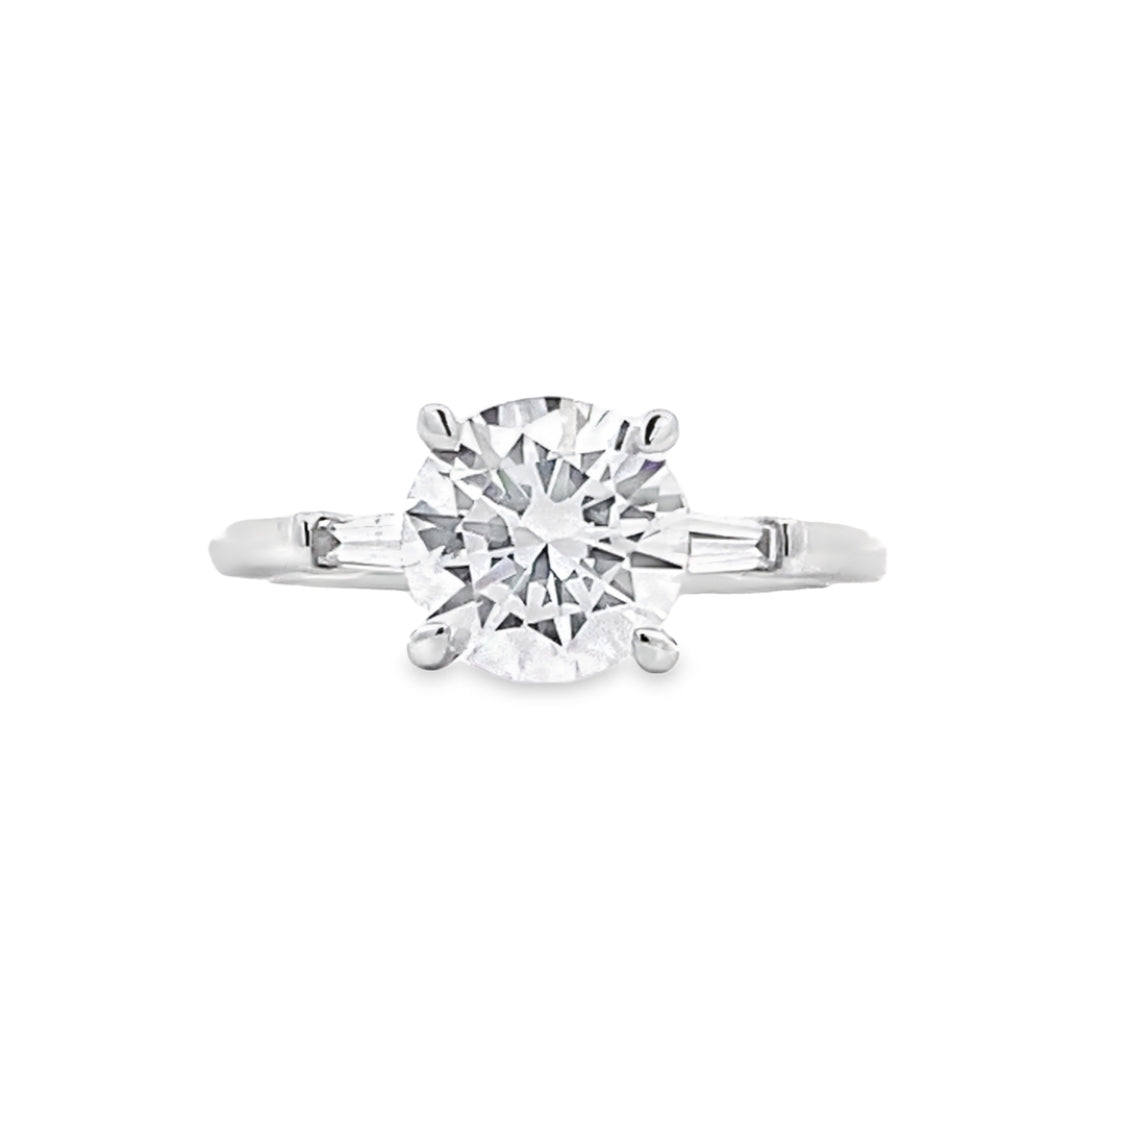 FANA 14 Karat White Gold 3 Stone Baguette Diamond Engagement Ring S4070/WG